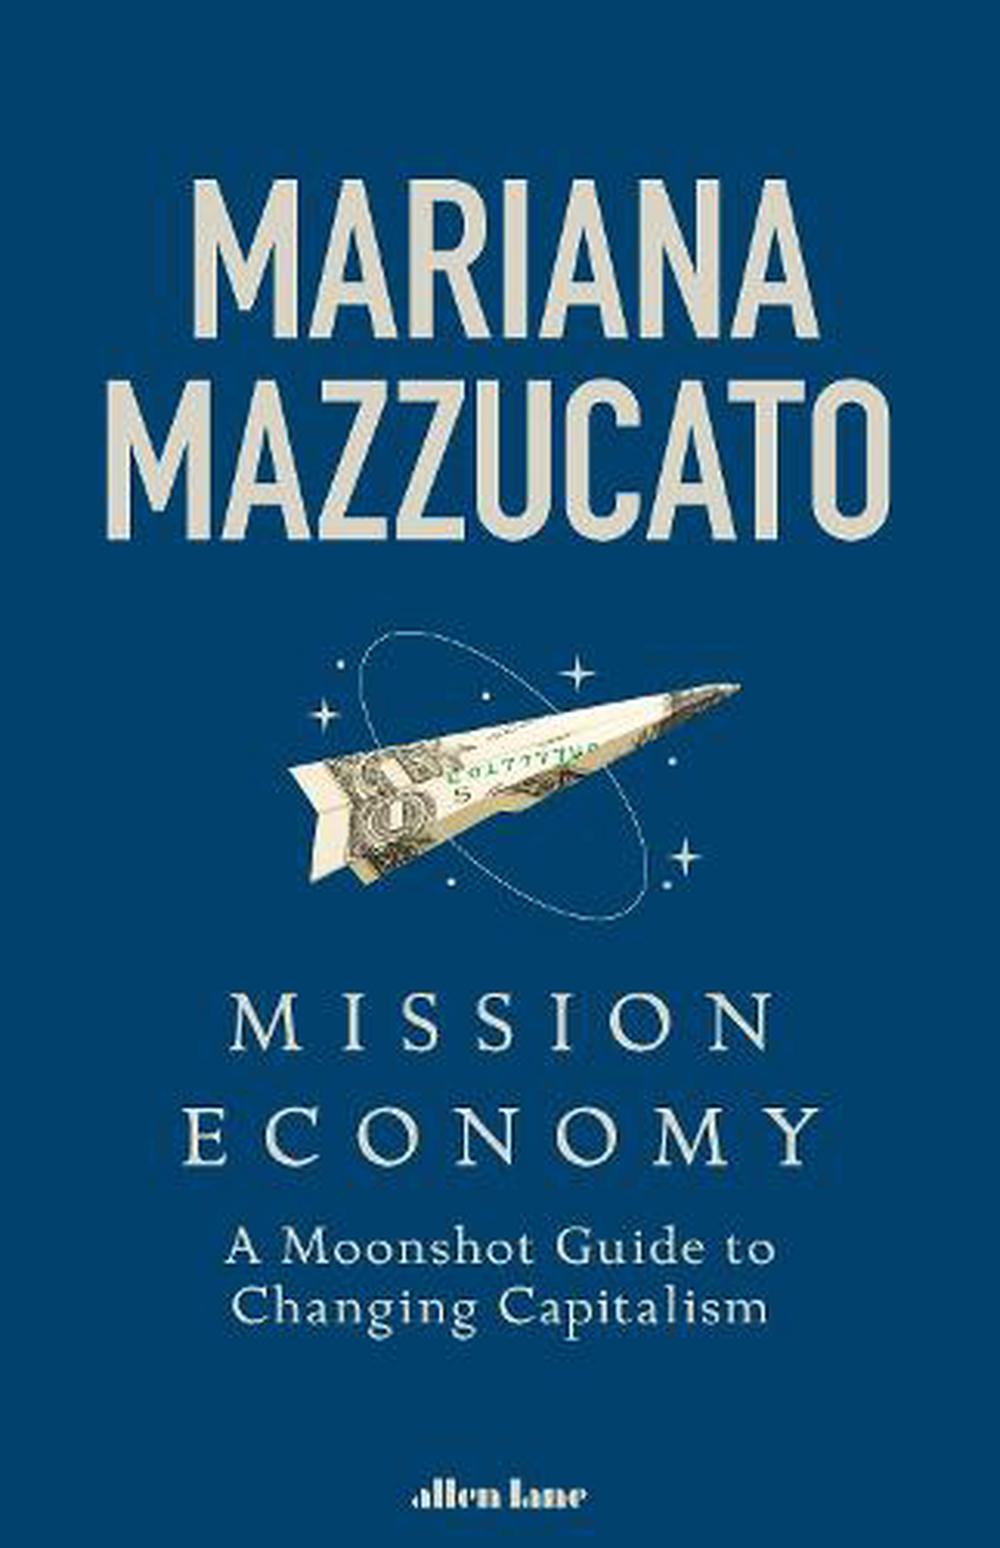 mission economy mariana mazzucato